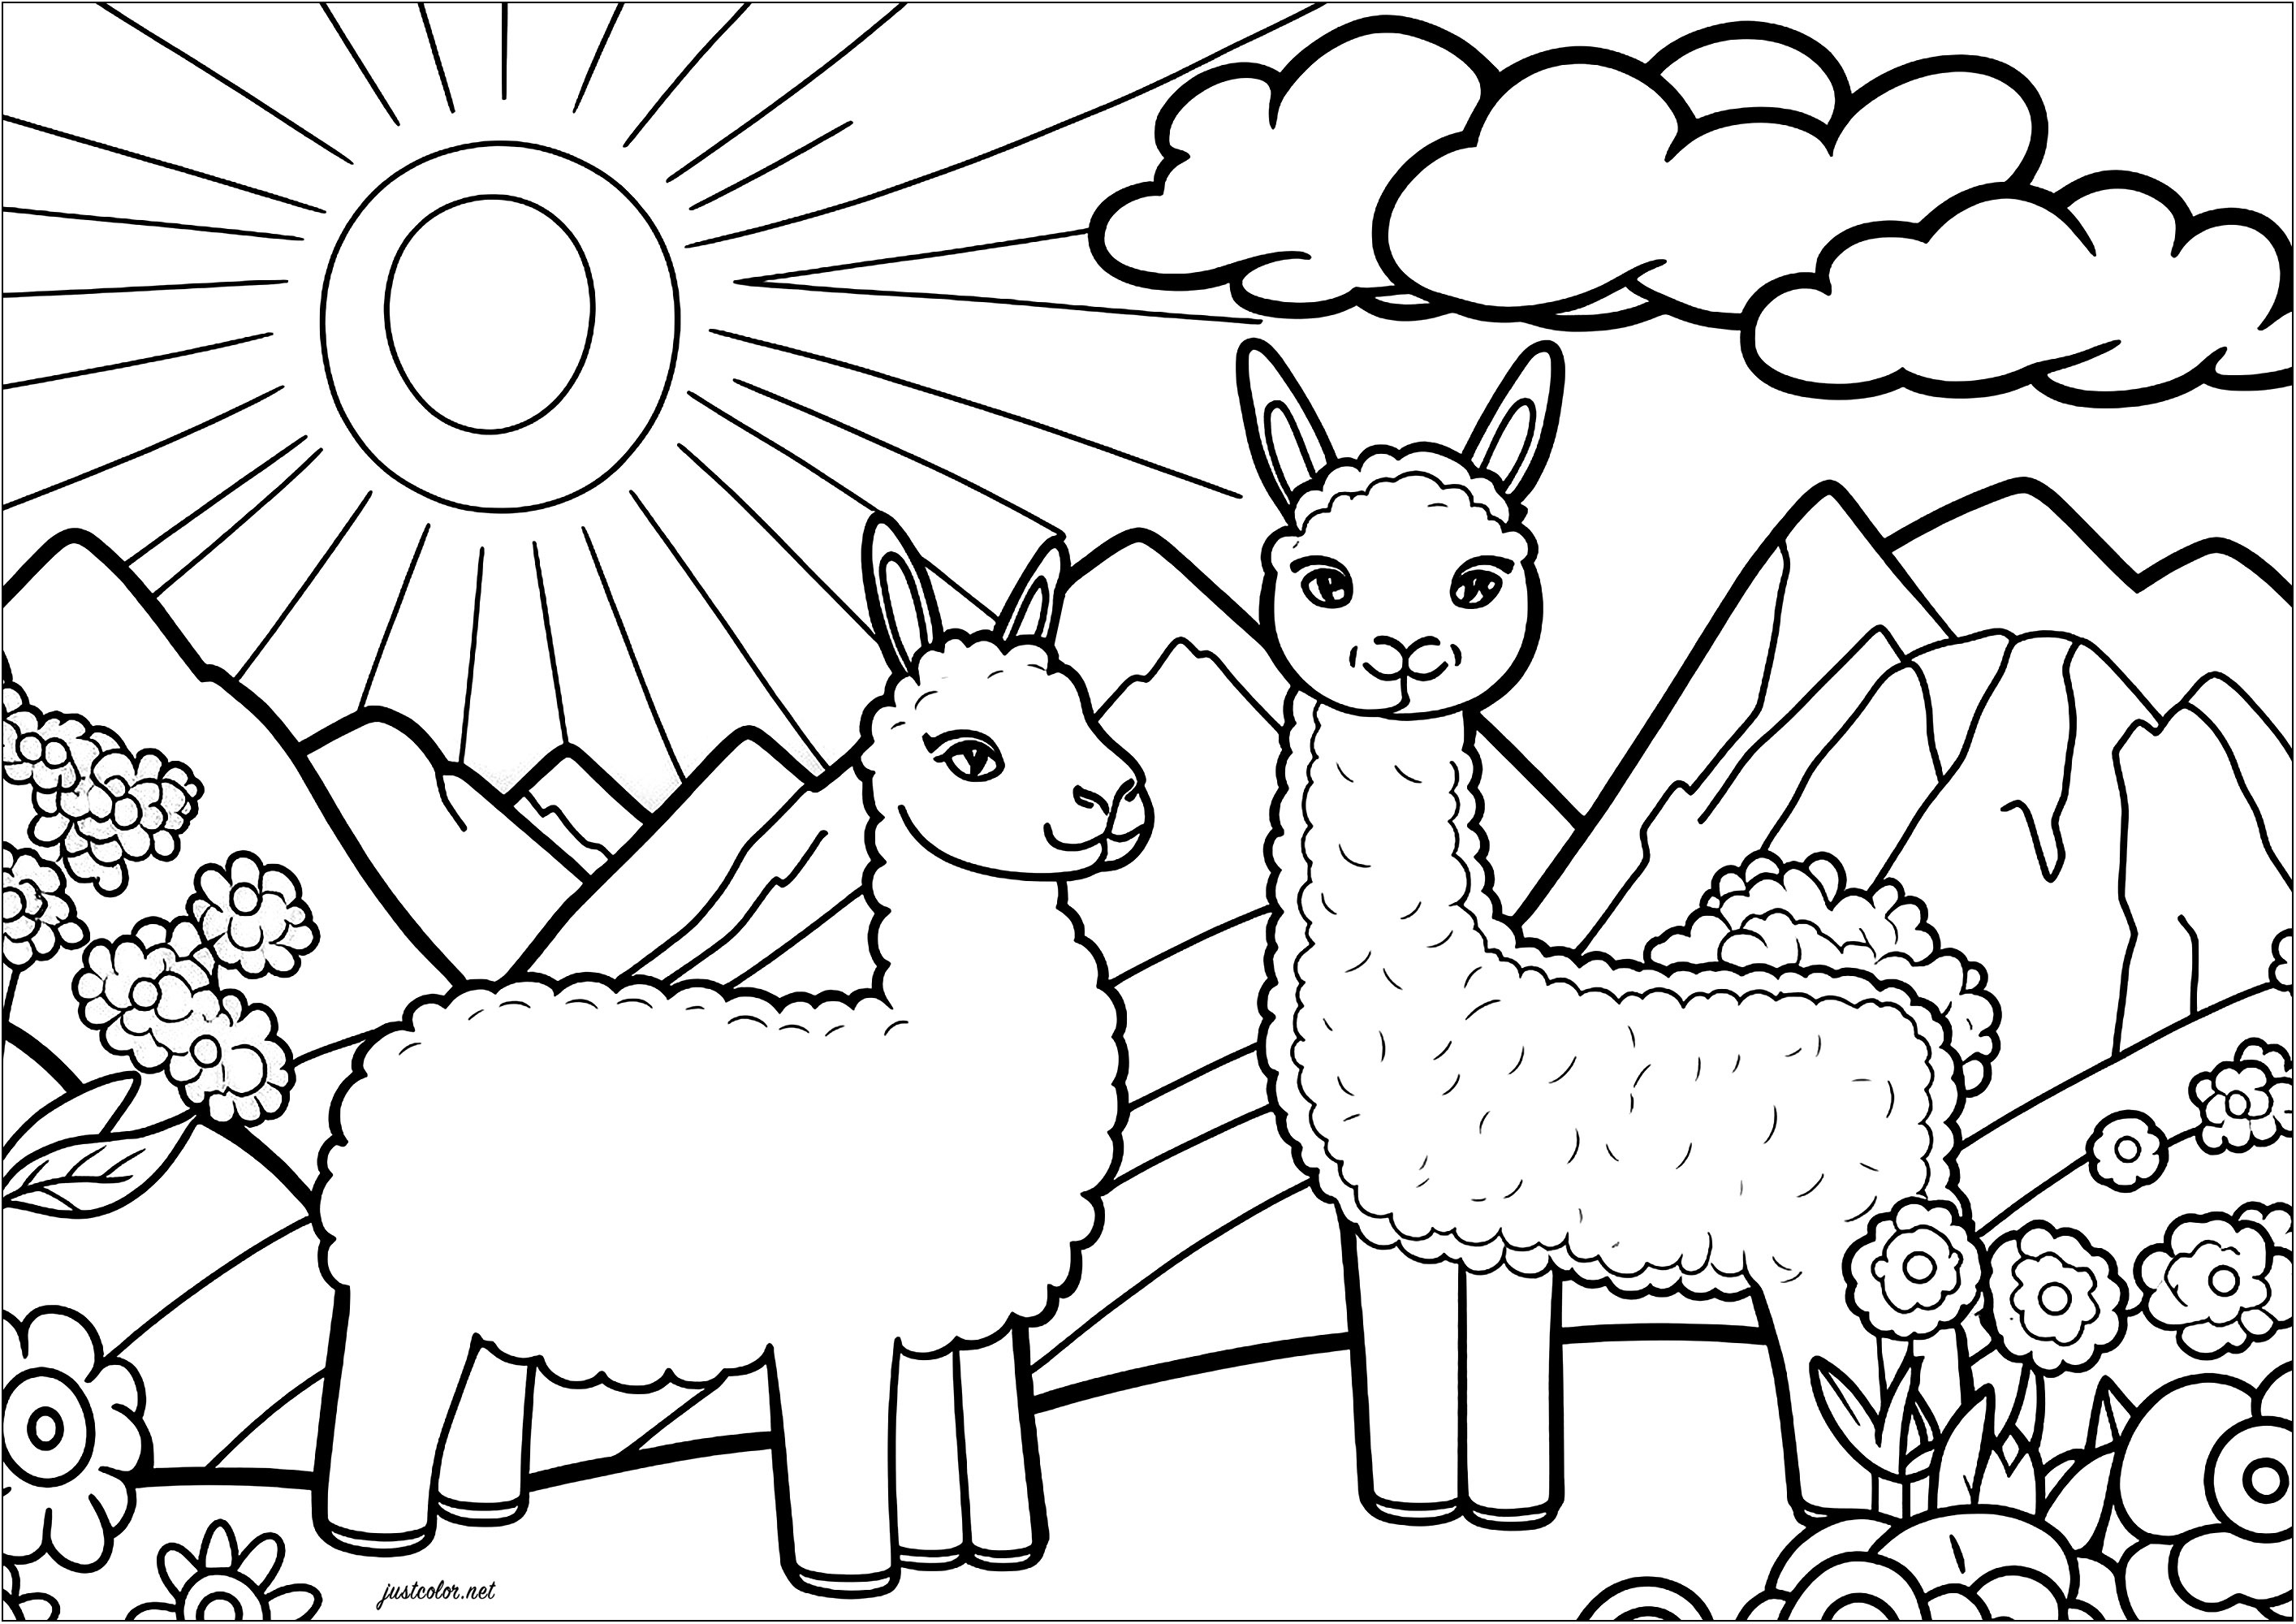 Färbung von zwei lustigen Lamas. Zwei lustige Lamas, die sich in einer bergigen Landschaft vergnügen. Im Hintergrund, eine große Sonne und einige Wolken.
Farbe auch die hübschen Blumen, die diese schöne Zeichnung zu vervollständigen